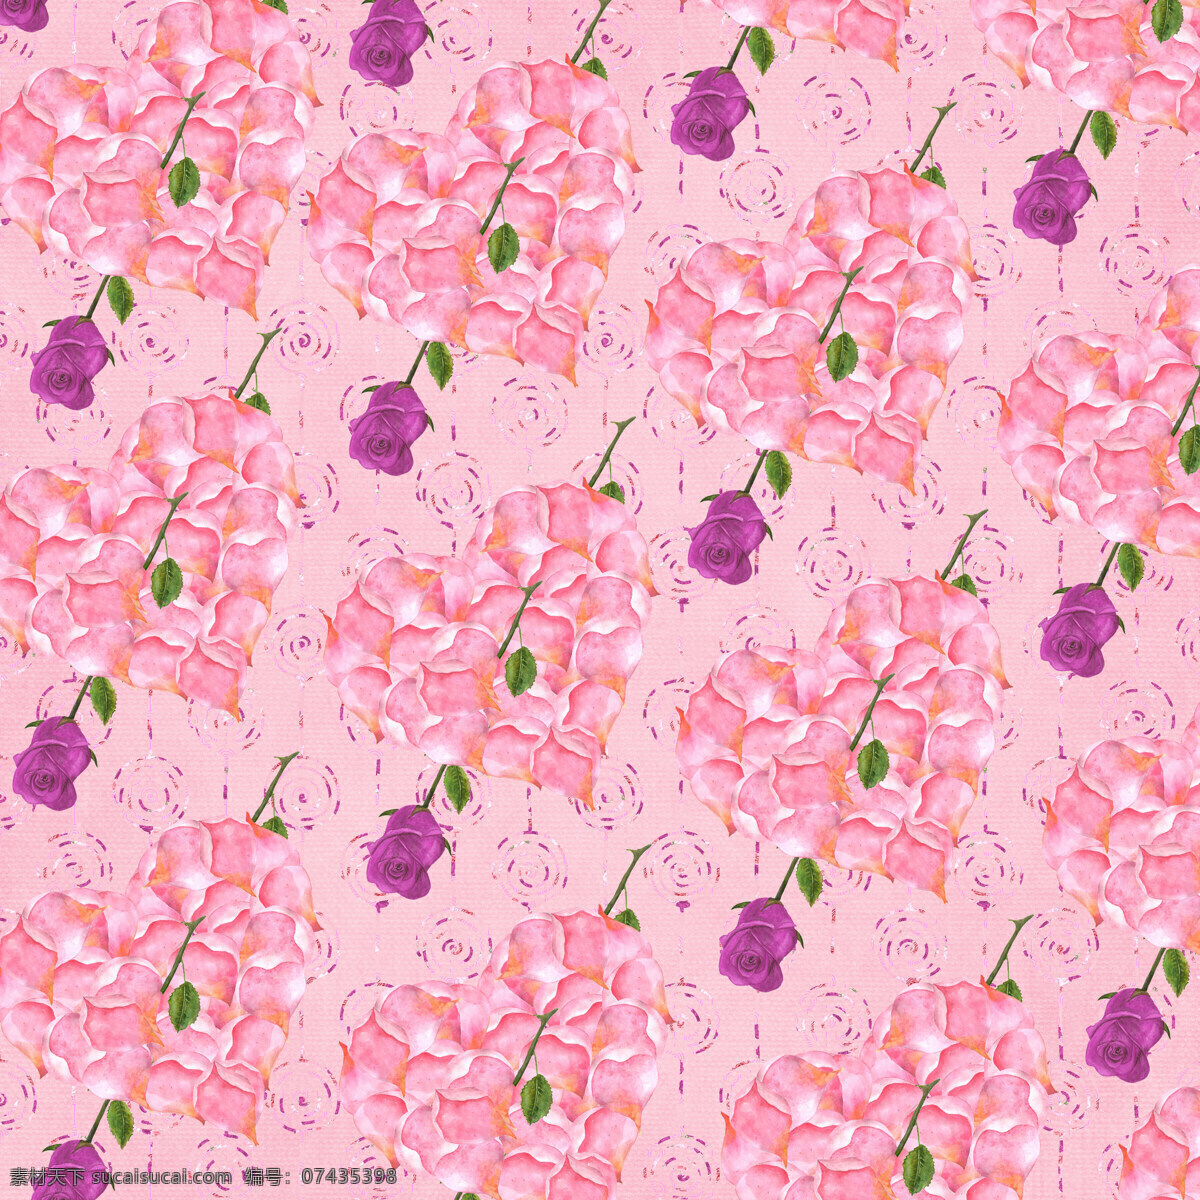 玫瑰 穿 心 花朵 粉色 情人节 背景 爱心 背景素材 粉红色 玫瑰花 填充背景 紫色